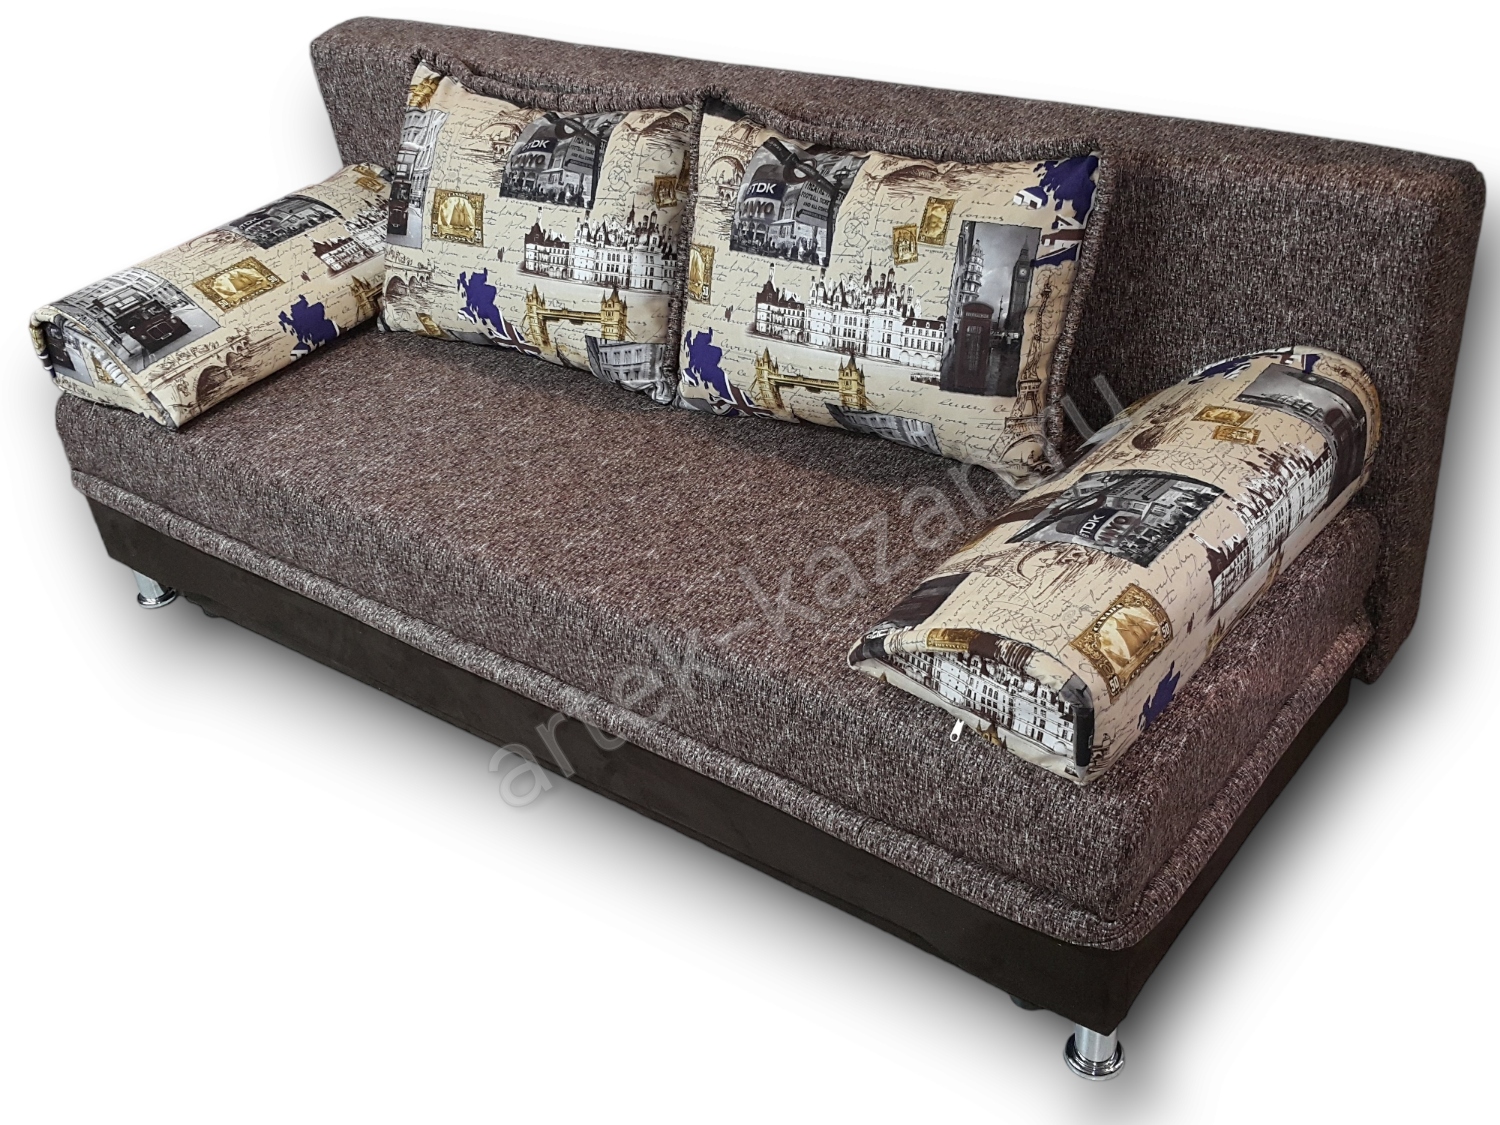 диван еврокнижка Эконом фото № 74. Купить недорогой диван по низкой цене от производителя можно у нас.